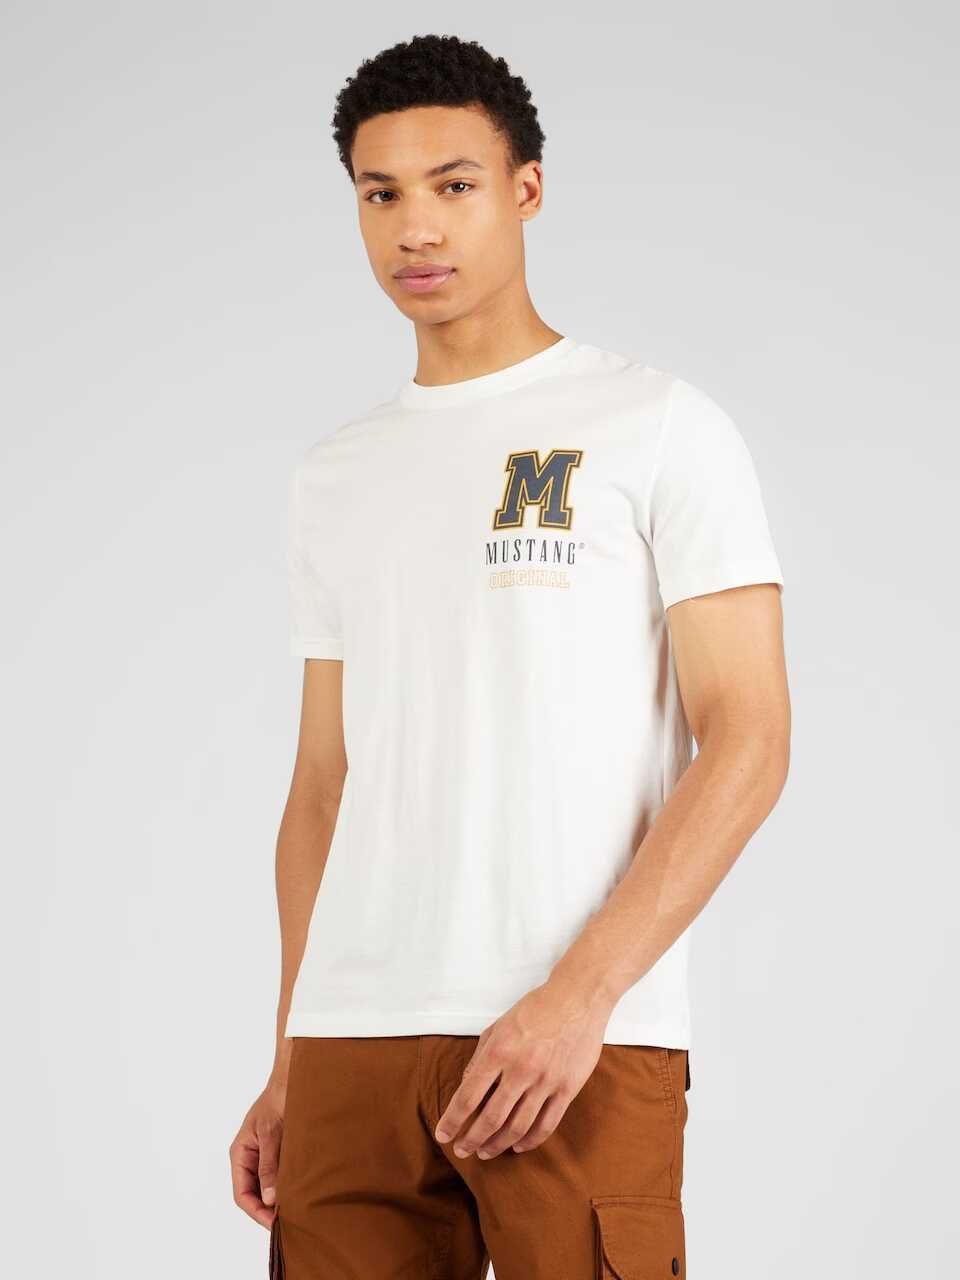 Мъжка тениска Alex Mustang, 100% памук, Бяла, XXL